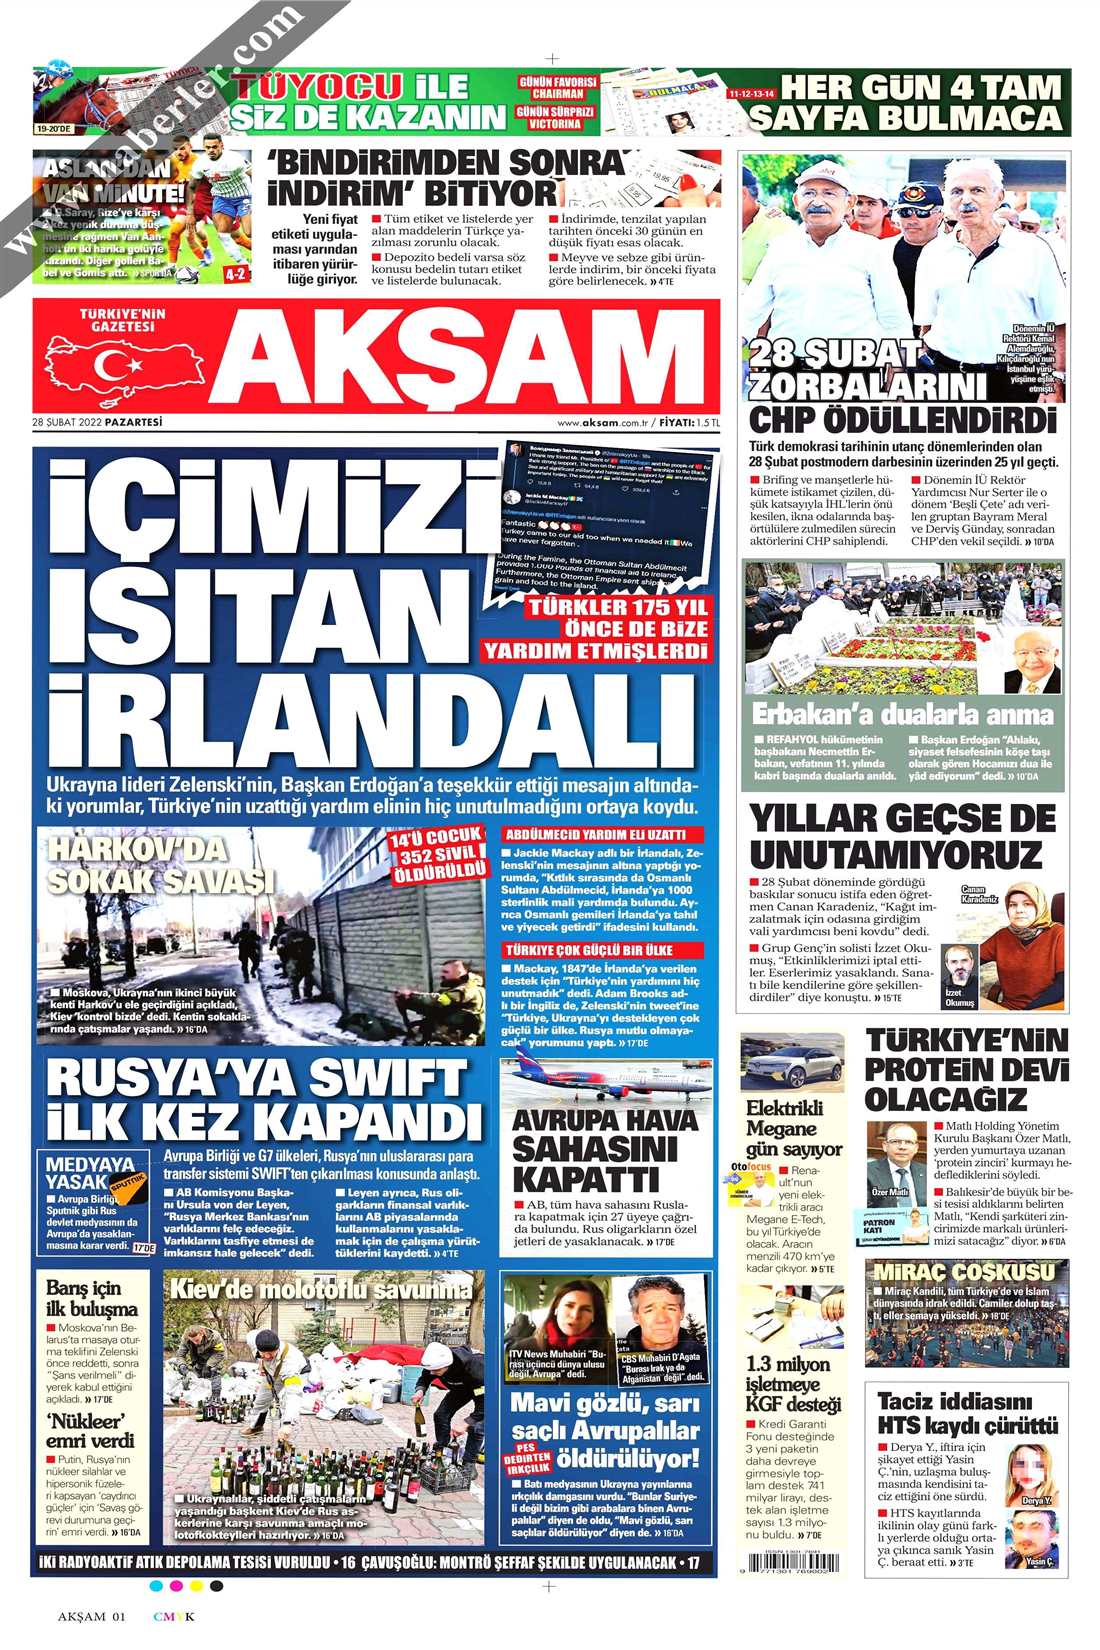 Yandaş gazeteler Erdoğan'ın sosyal medya açıklamasını nasıl ...